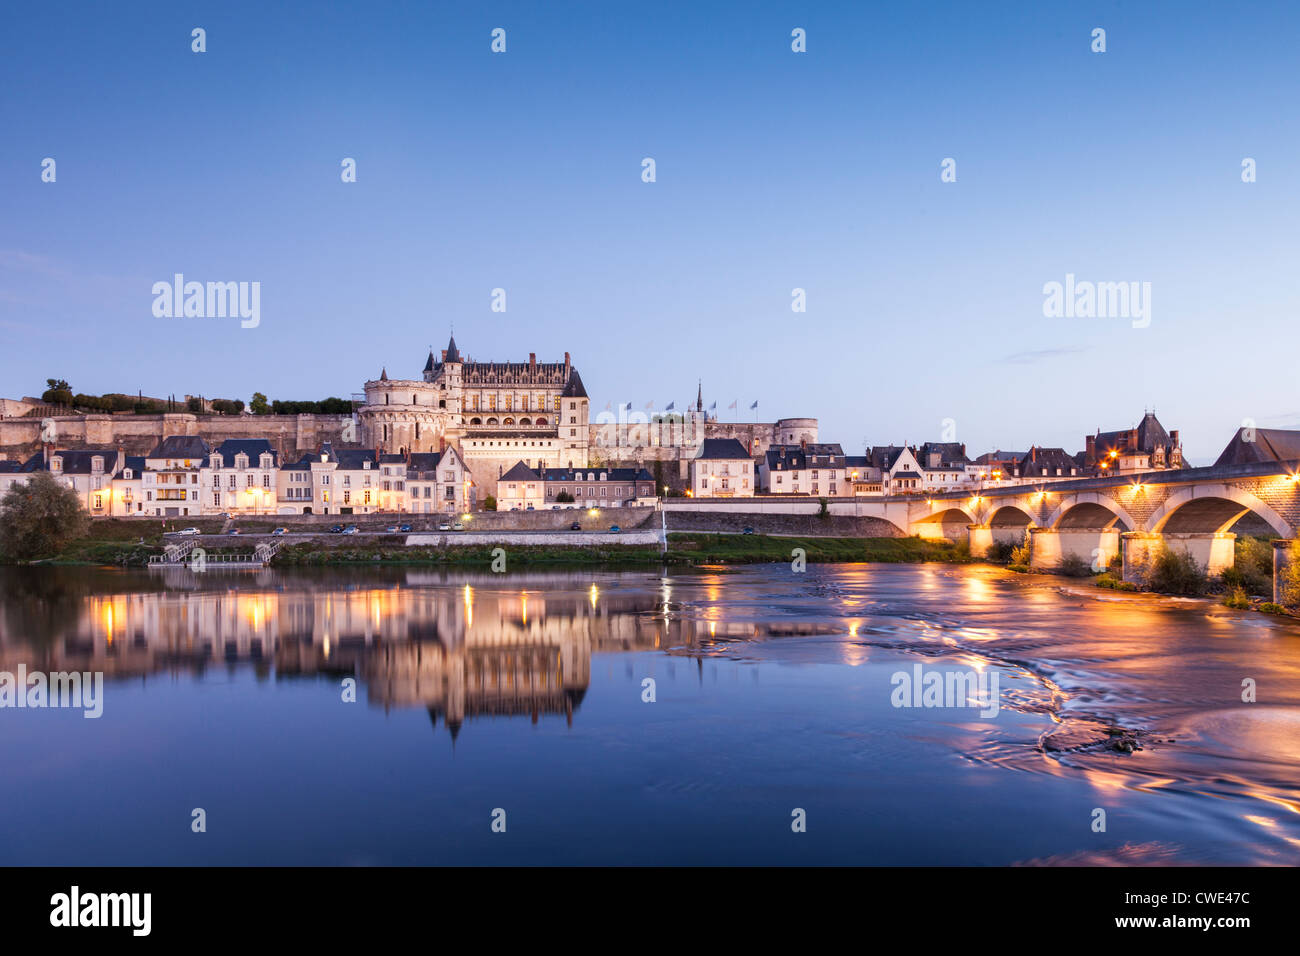 La città murata e del Castello di Amboise si riflette nel fiume Loira in serata. Foto Stock